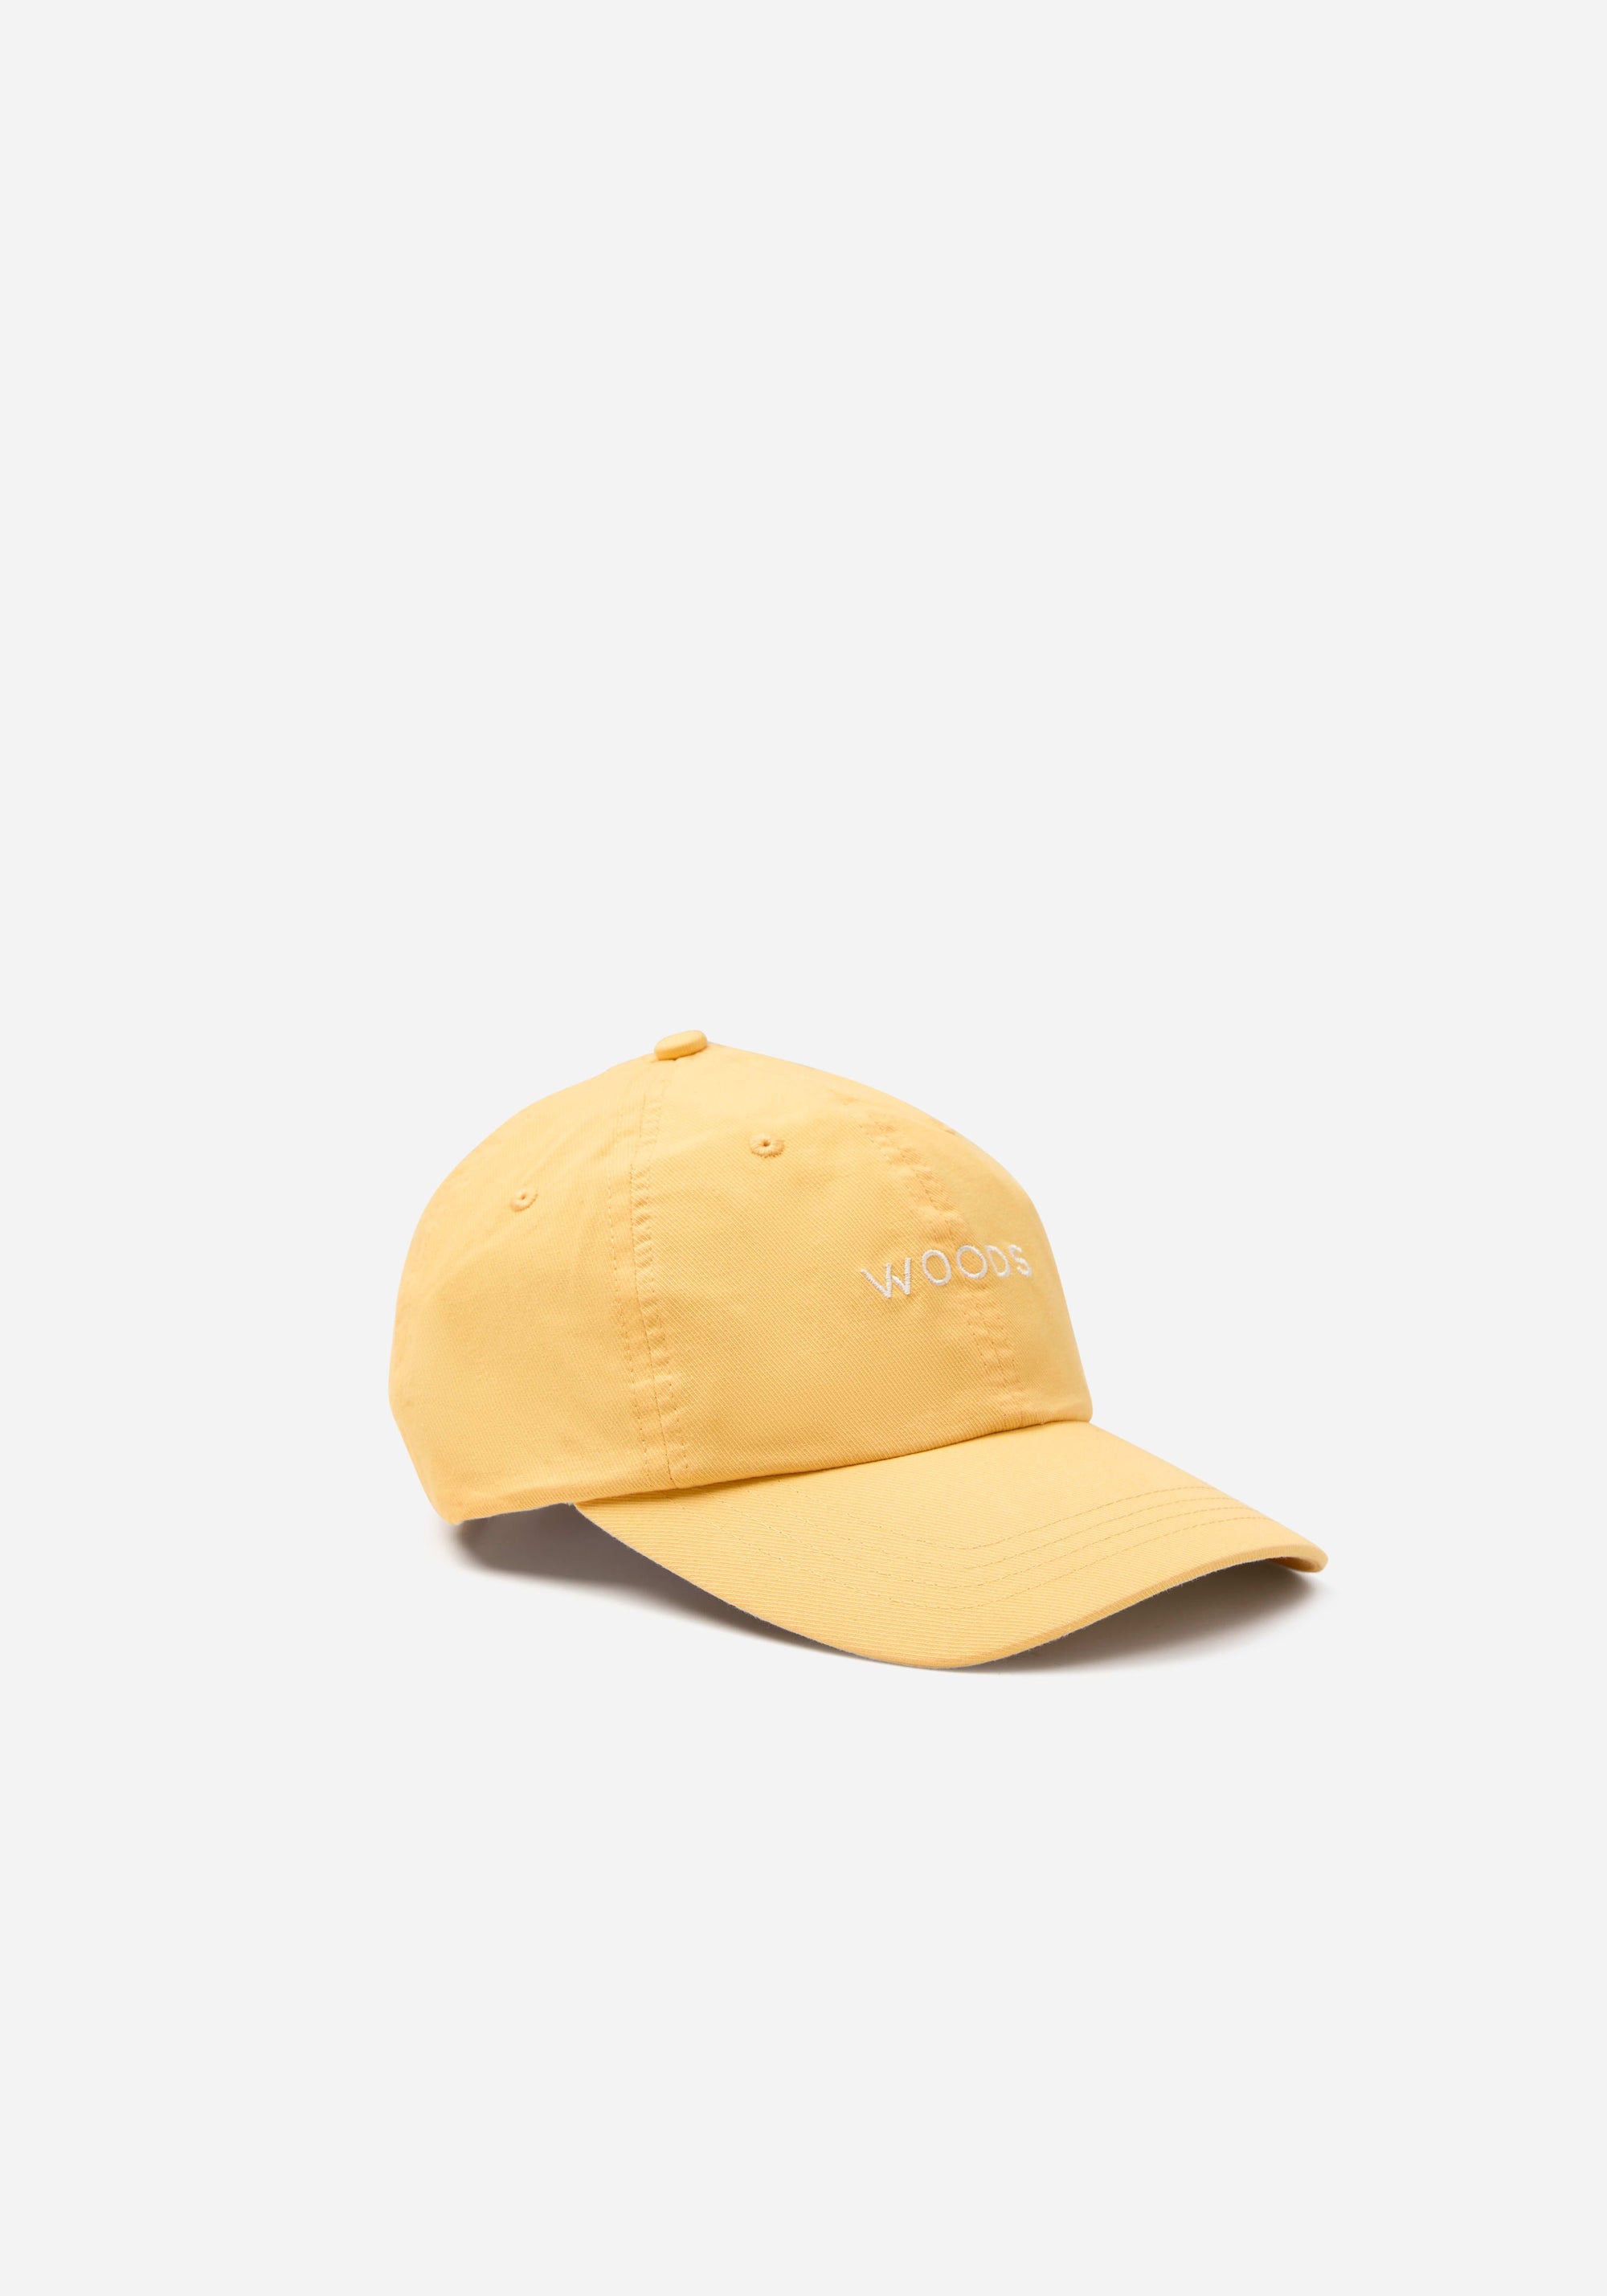 Woods Vintage Cap - Buttercup